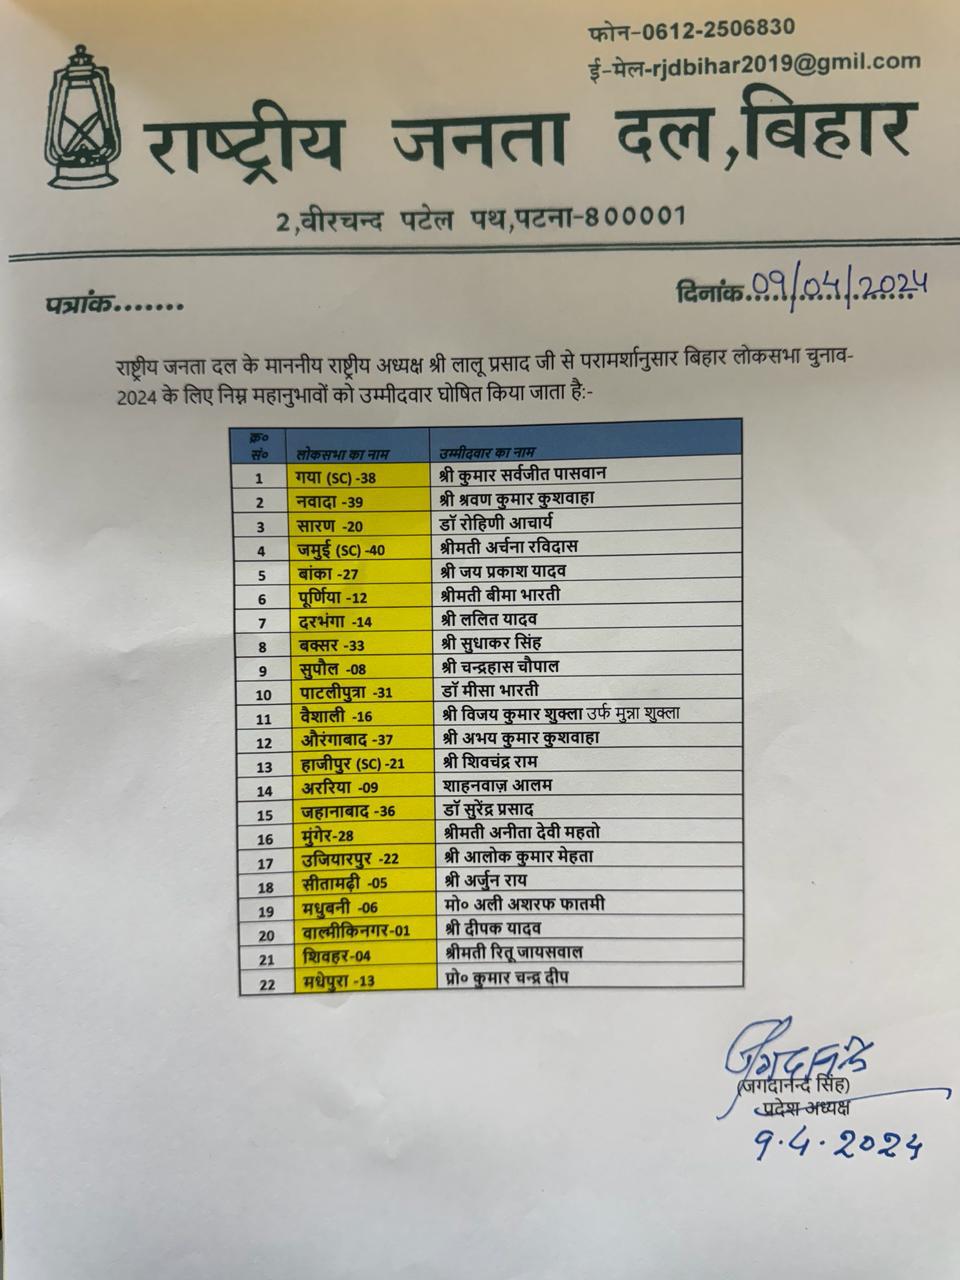 राजद ने 22 उम्मीदवारों की सूची जारी की,ख